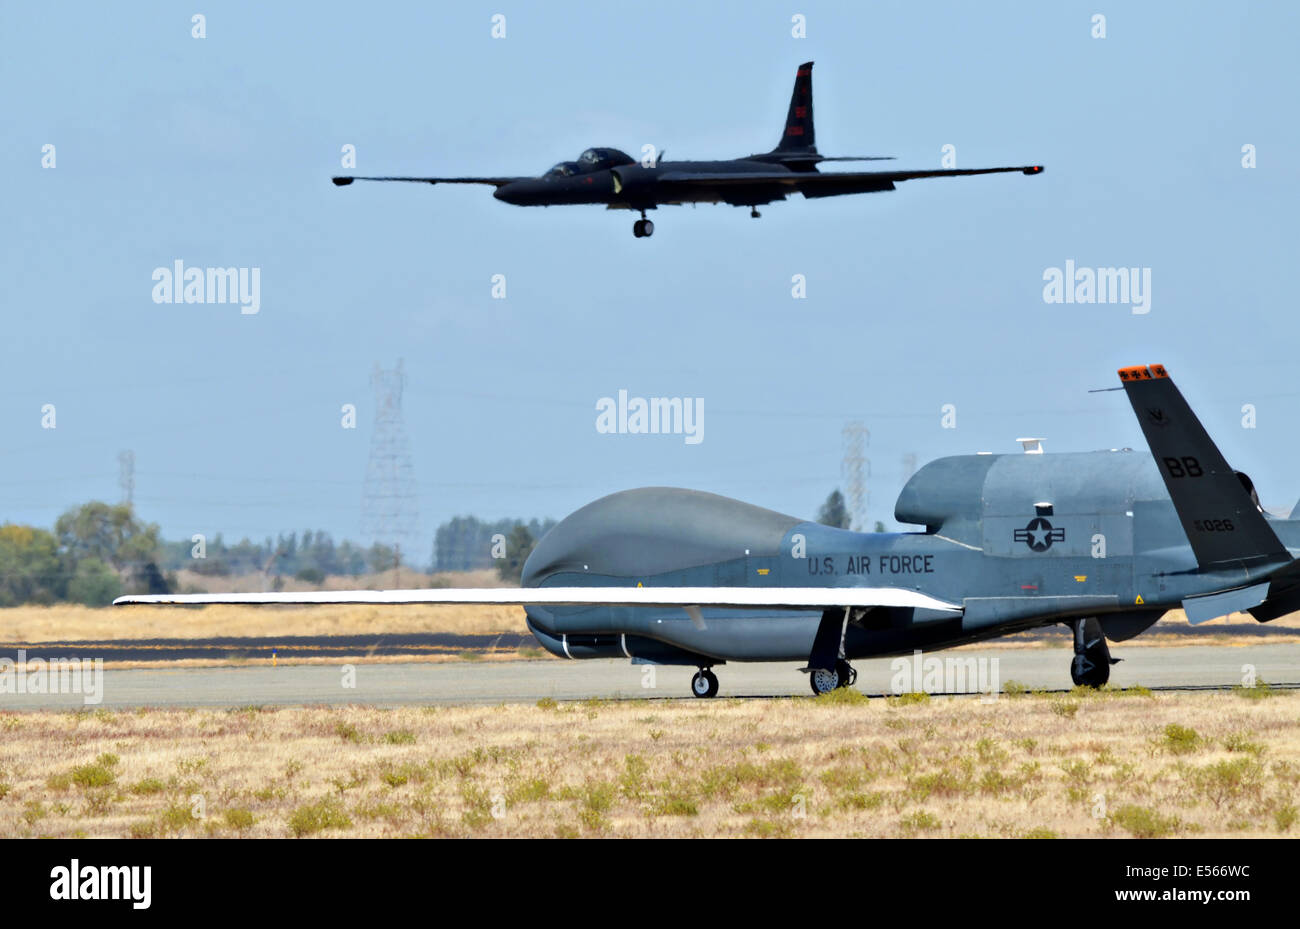 Eine RQ-4 Global Hawk rollt auf dem Flug Linie wie ein Spionageflugzeug u-2 Dragon Lady macht den Endanflug auf der Beale Air Force Base 17. September 2013 in Maryville, Kalifornien zu landen. Die RQ-4 und u-2 sind die Air Force primäre Hochgebirgs Intelligenz, Überwachung und Aufklärung Flugzeuge. Stockfoto